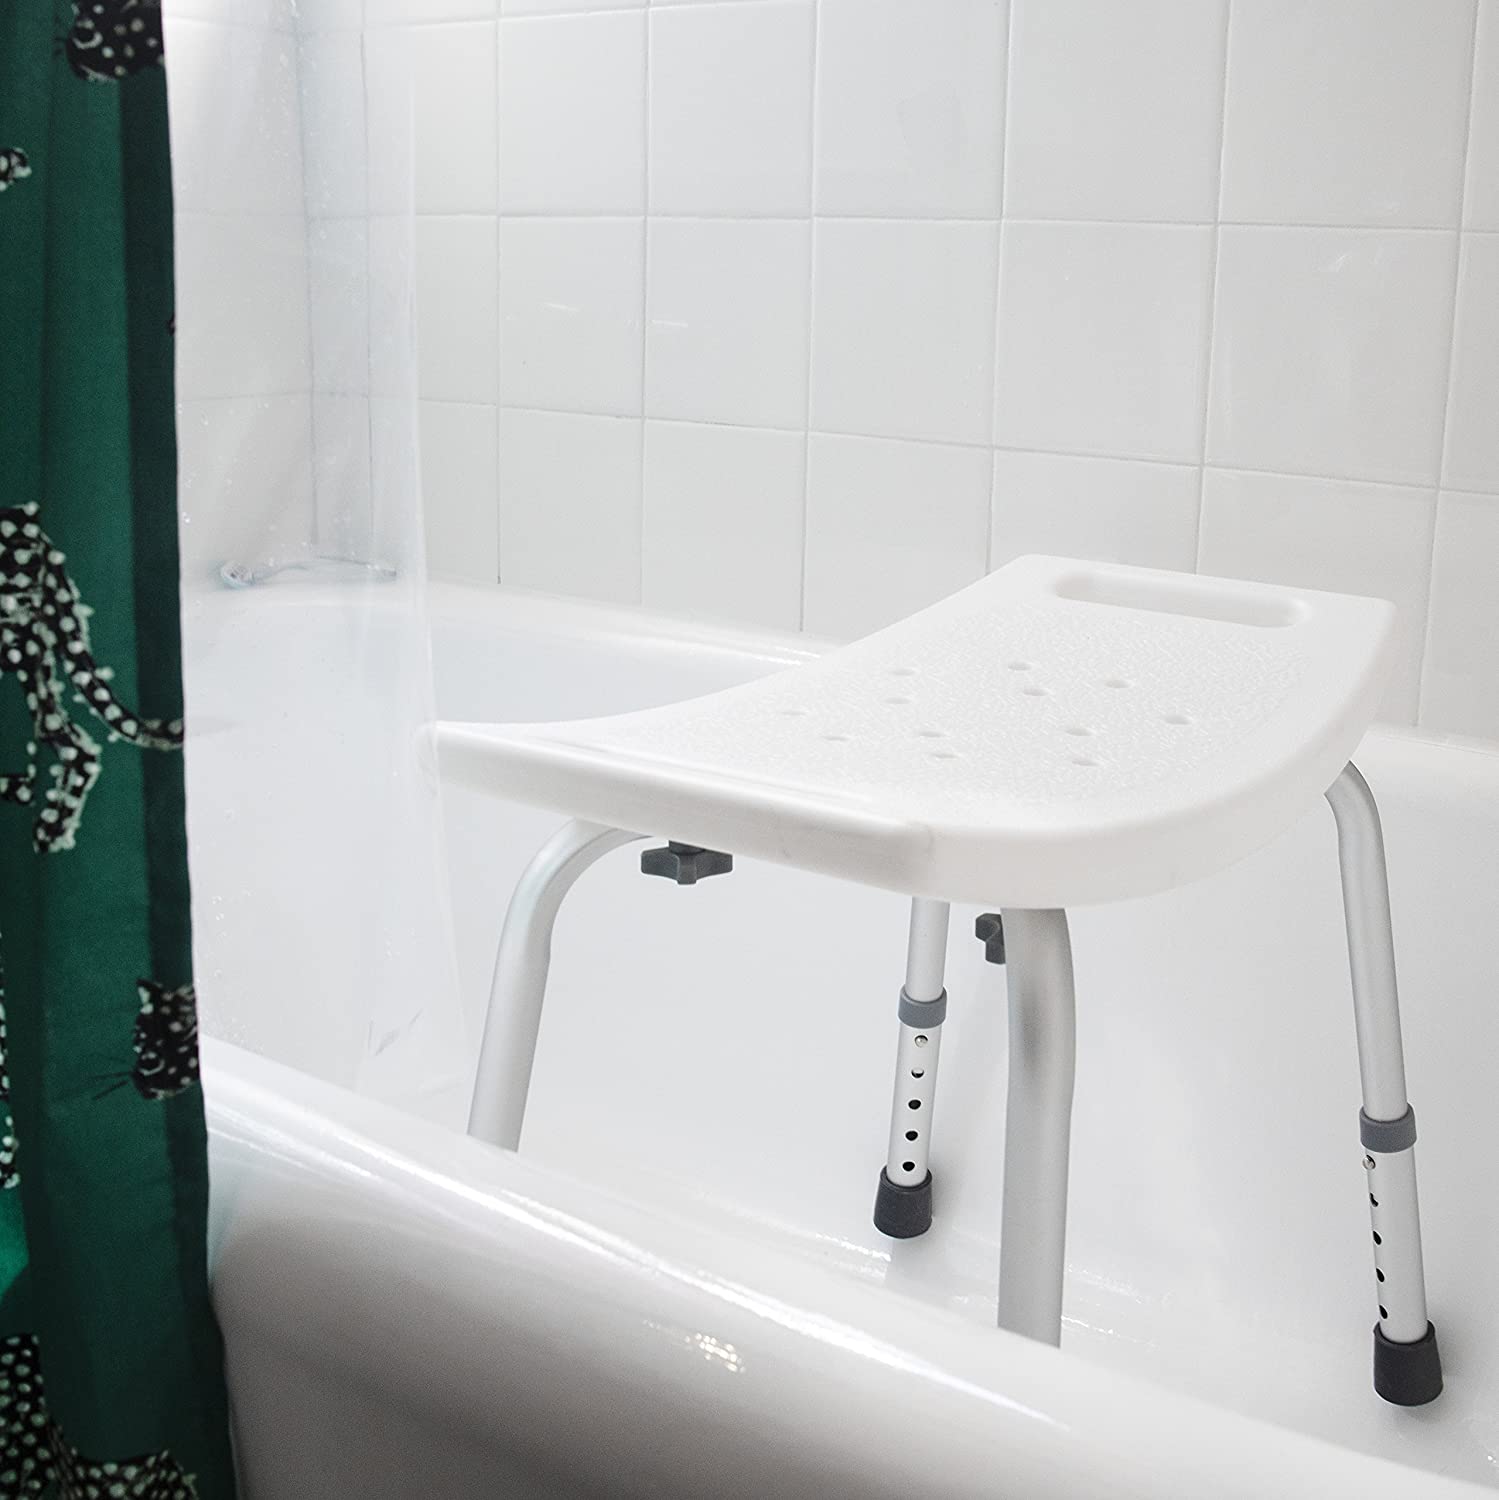 DMI Tool-Free Bath Seat – Shower Chair w/ and w/o Back AM-522-0797-1900